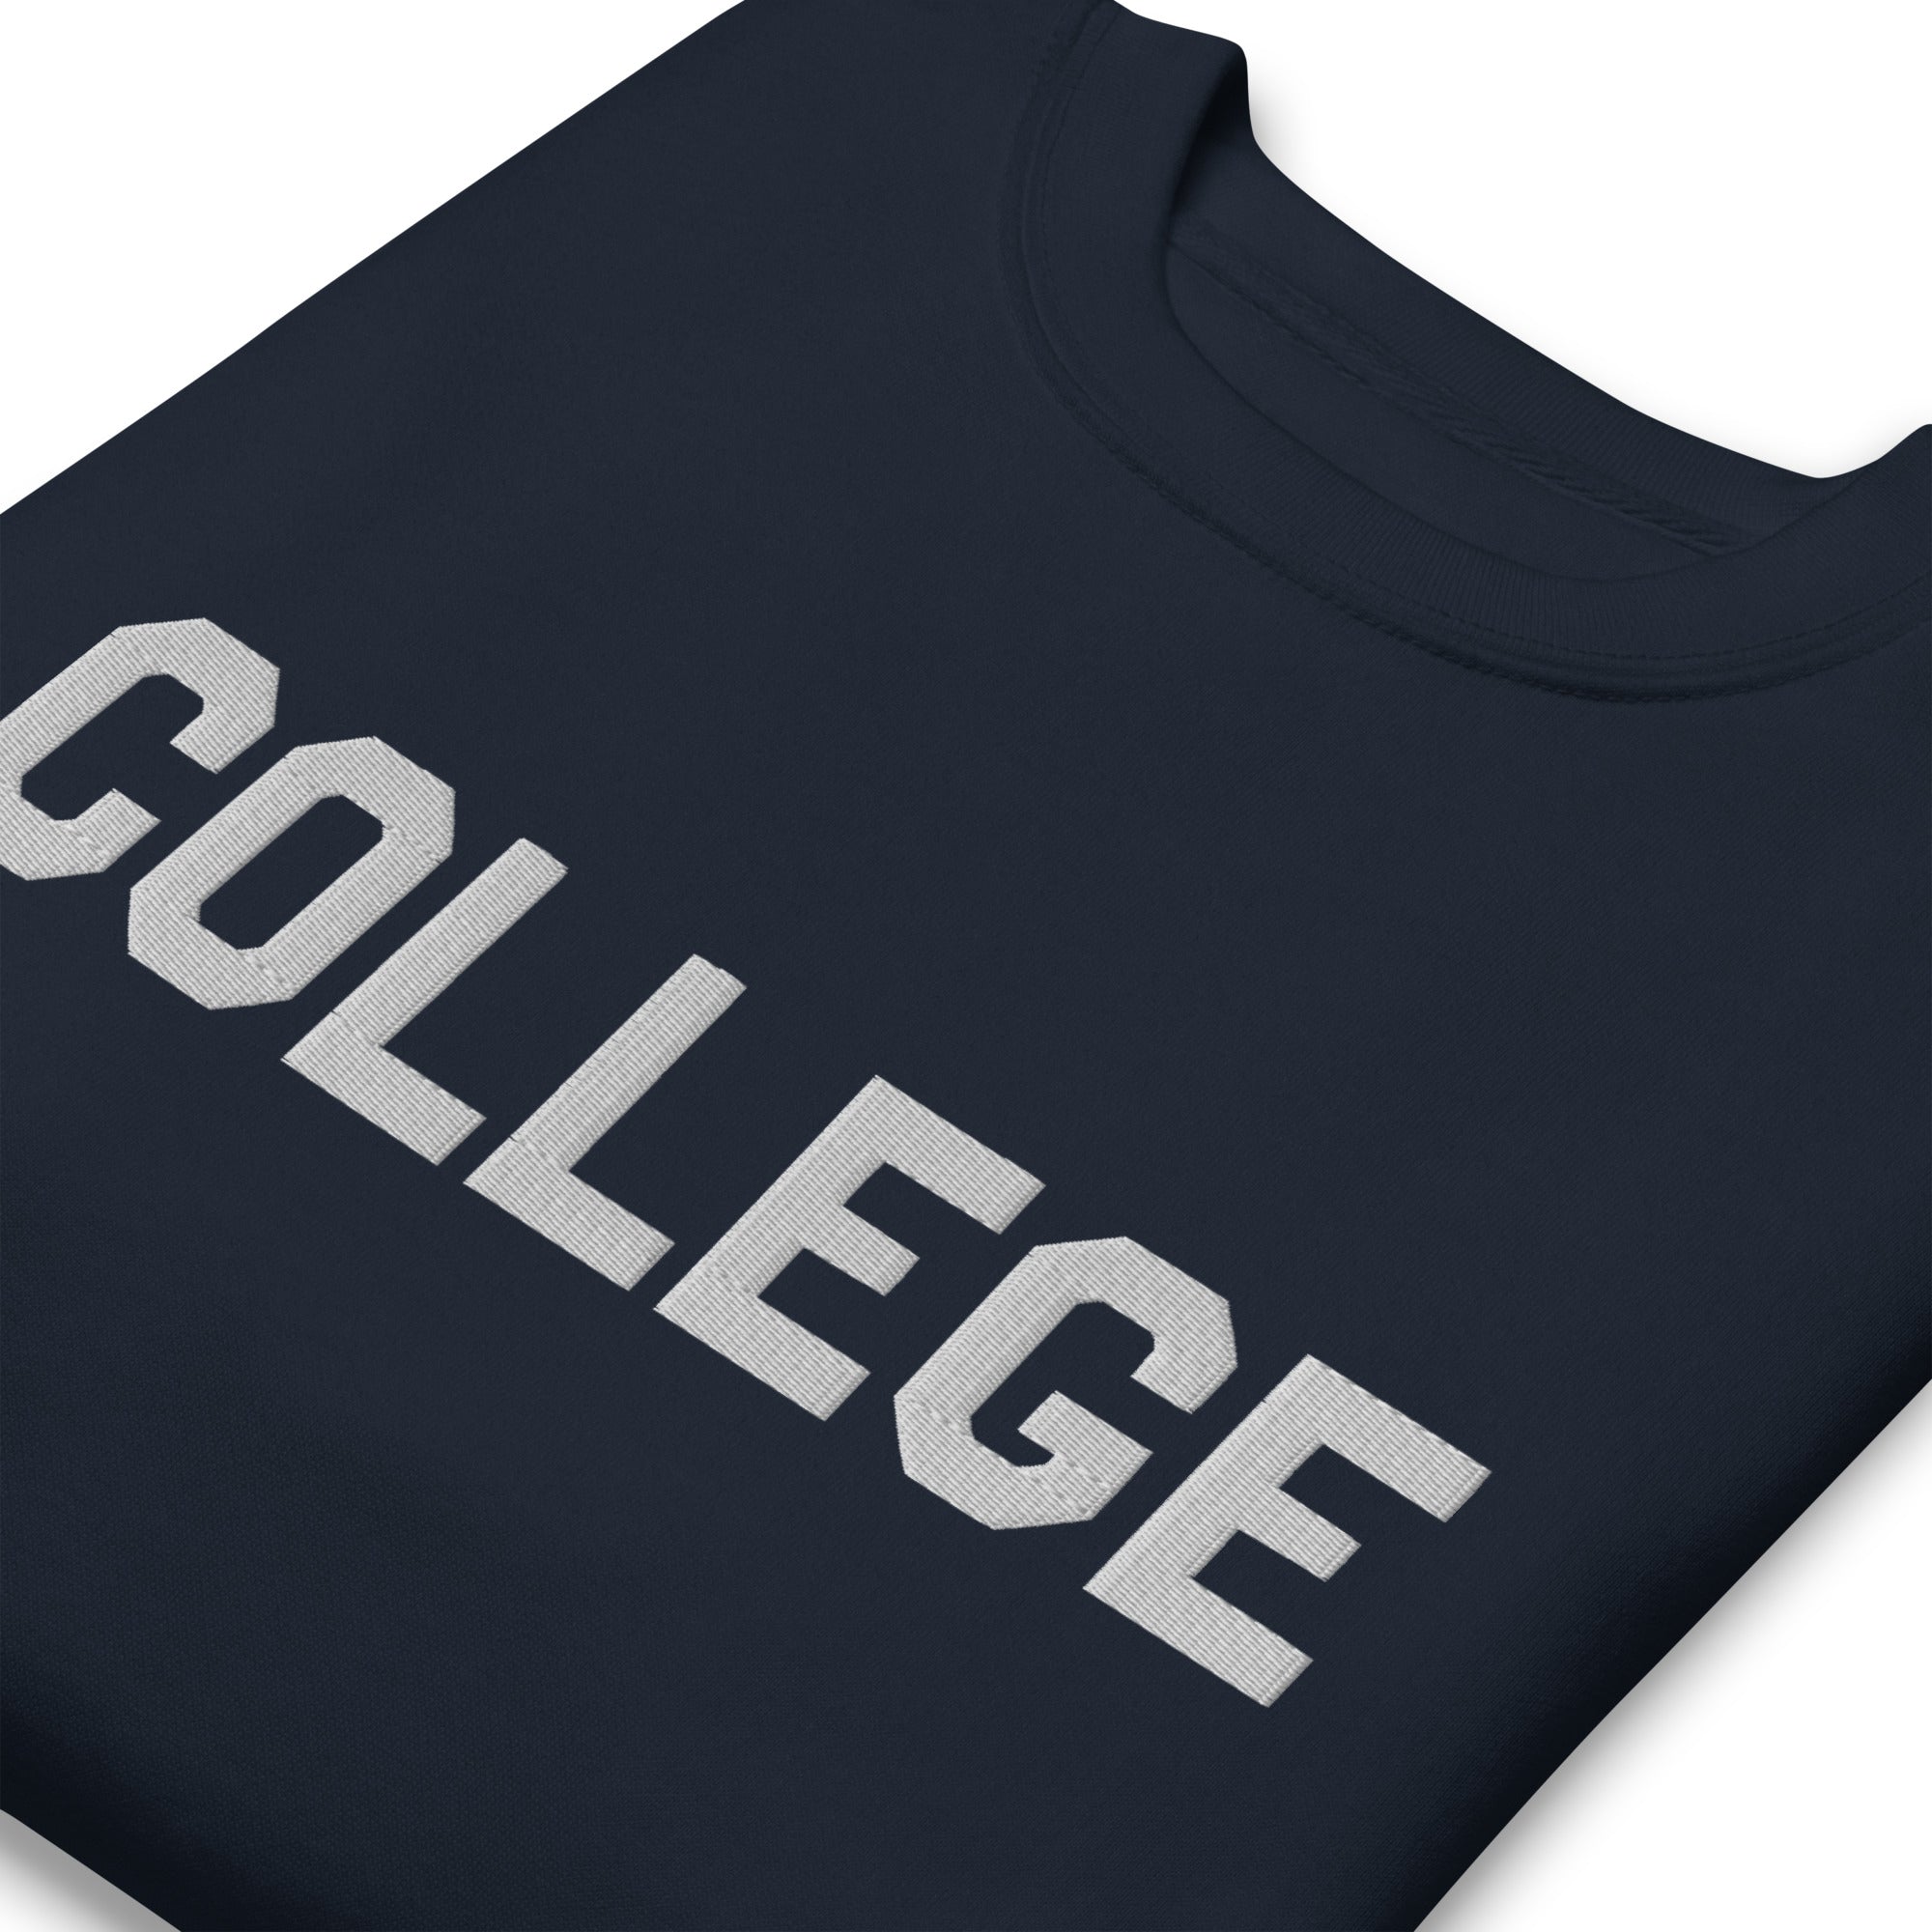 Bluto College Embroidered Sweatshirt